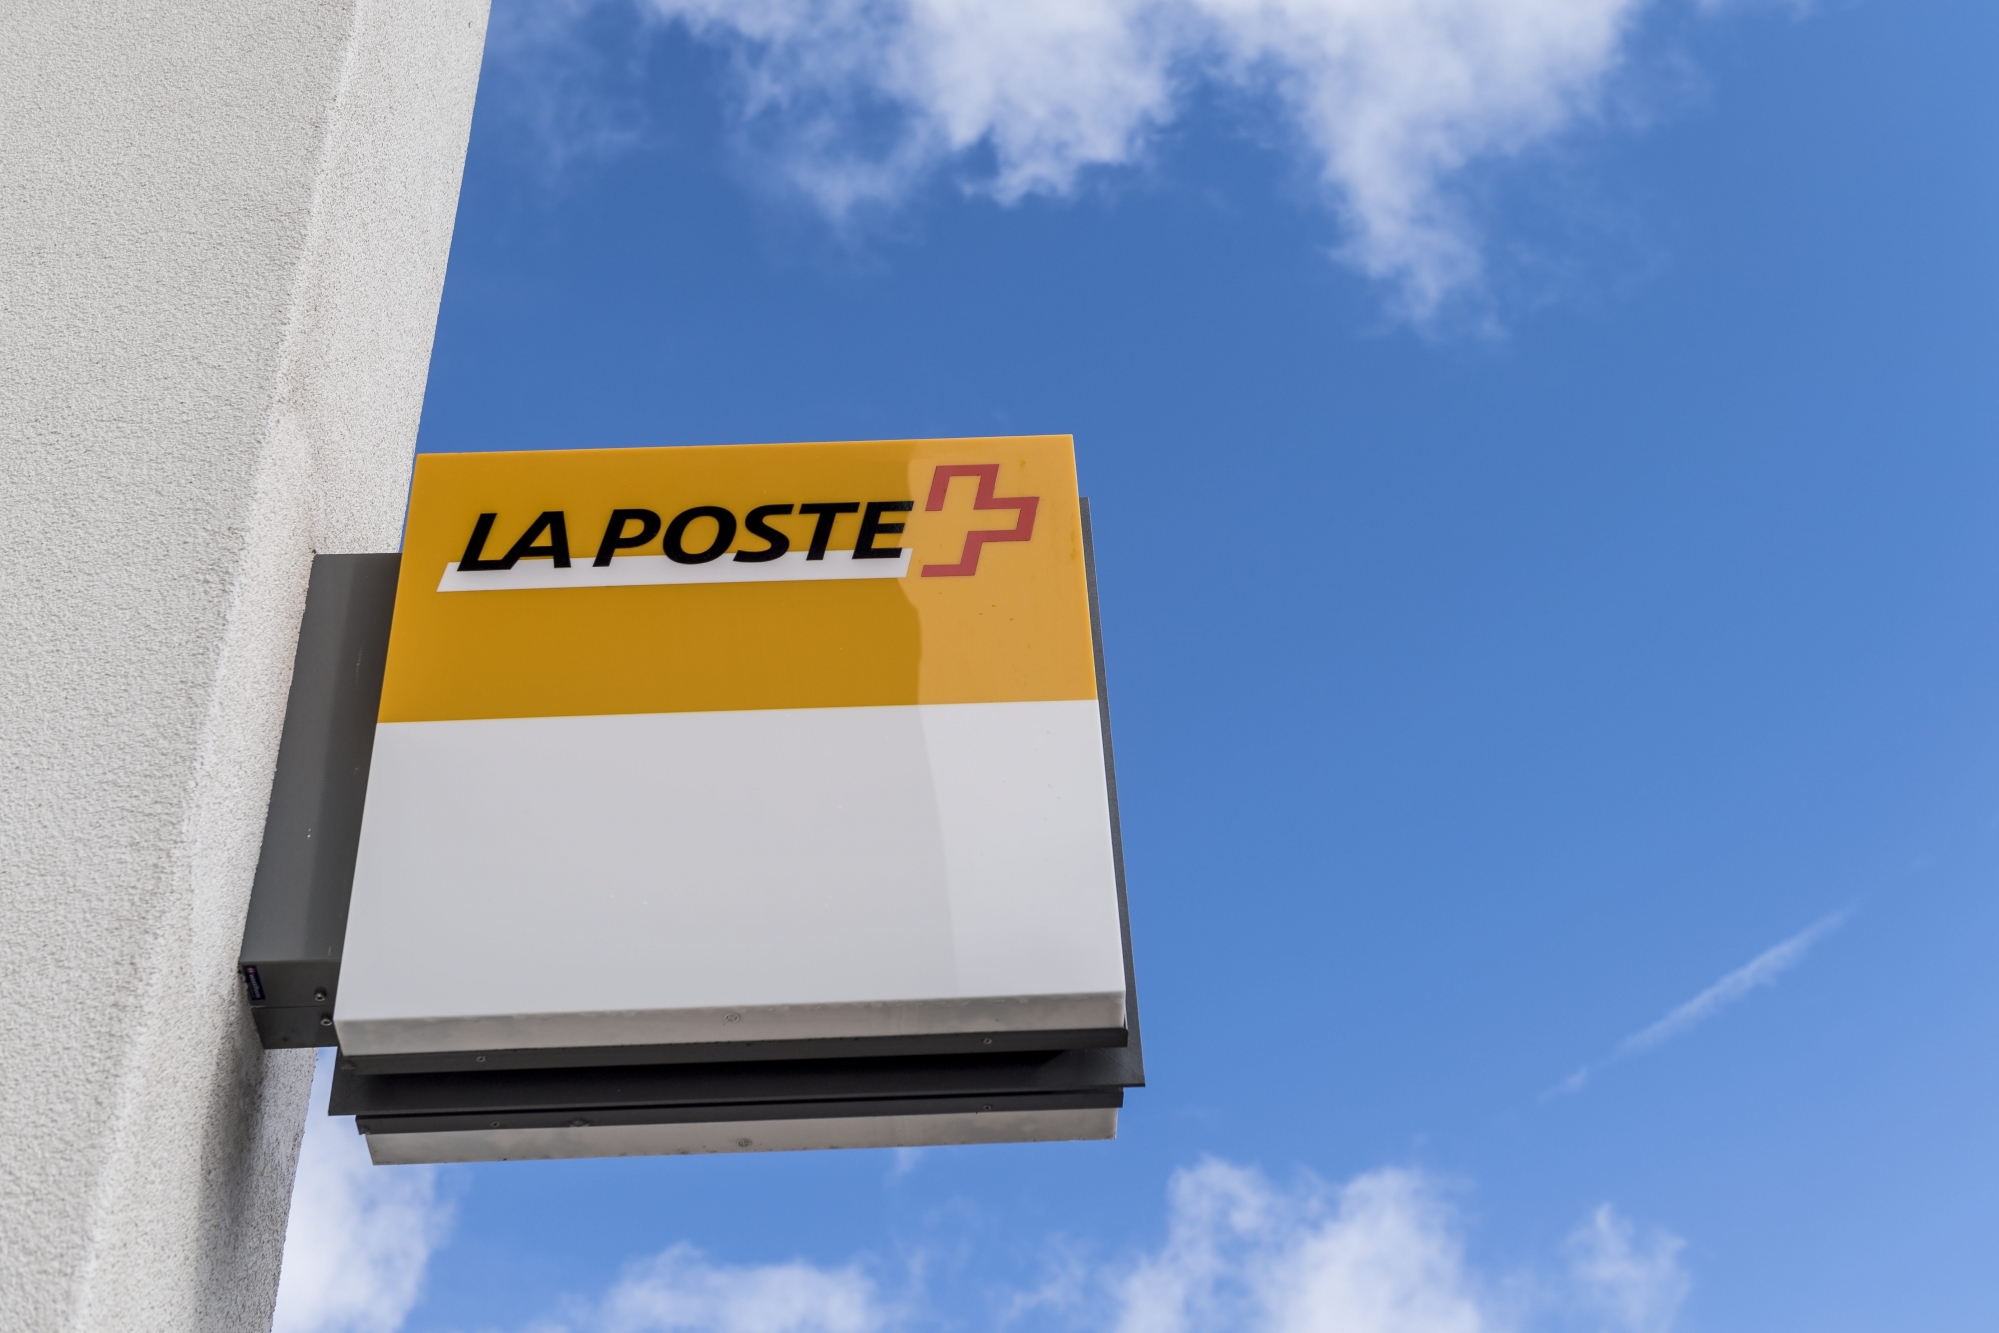 A partir du lundi 30 avril, les habitants de Sembrancher pourront effectuer leurs transactions postales à la nouvelle filiale de La Poste, implantée dans le centre commercial Migros.